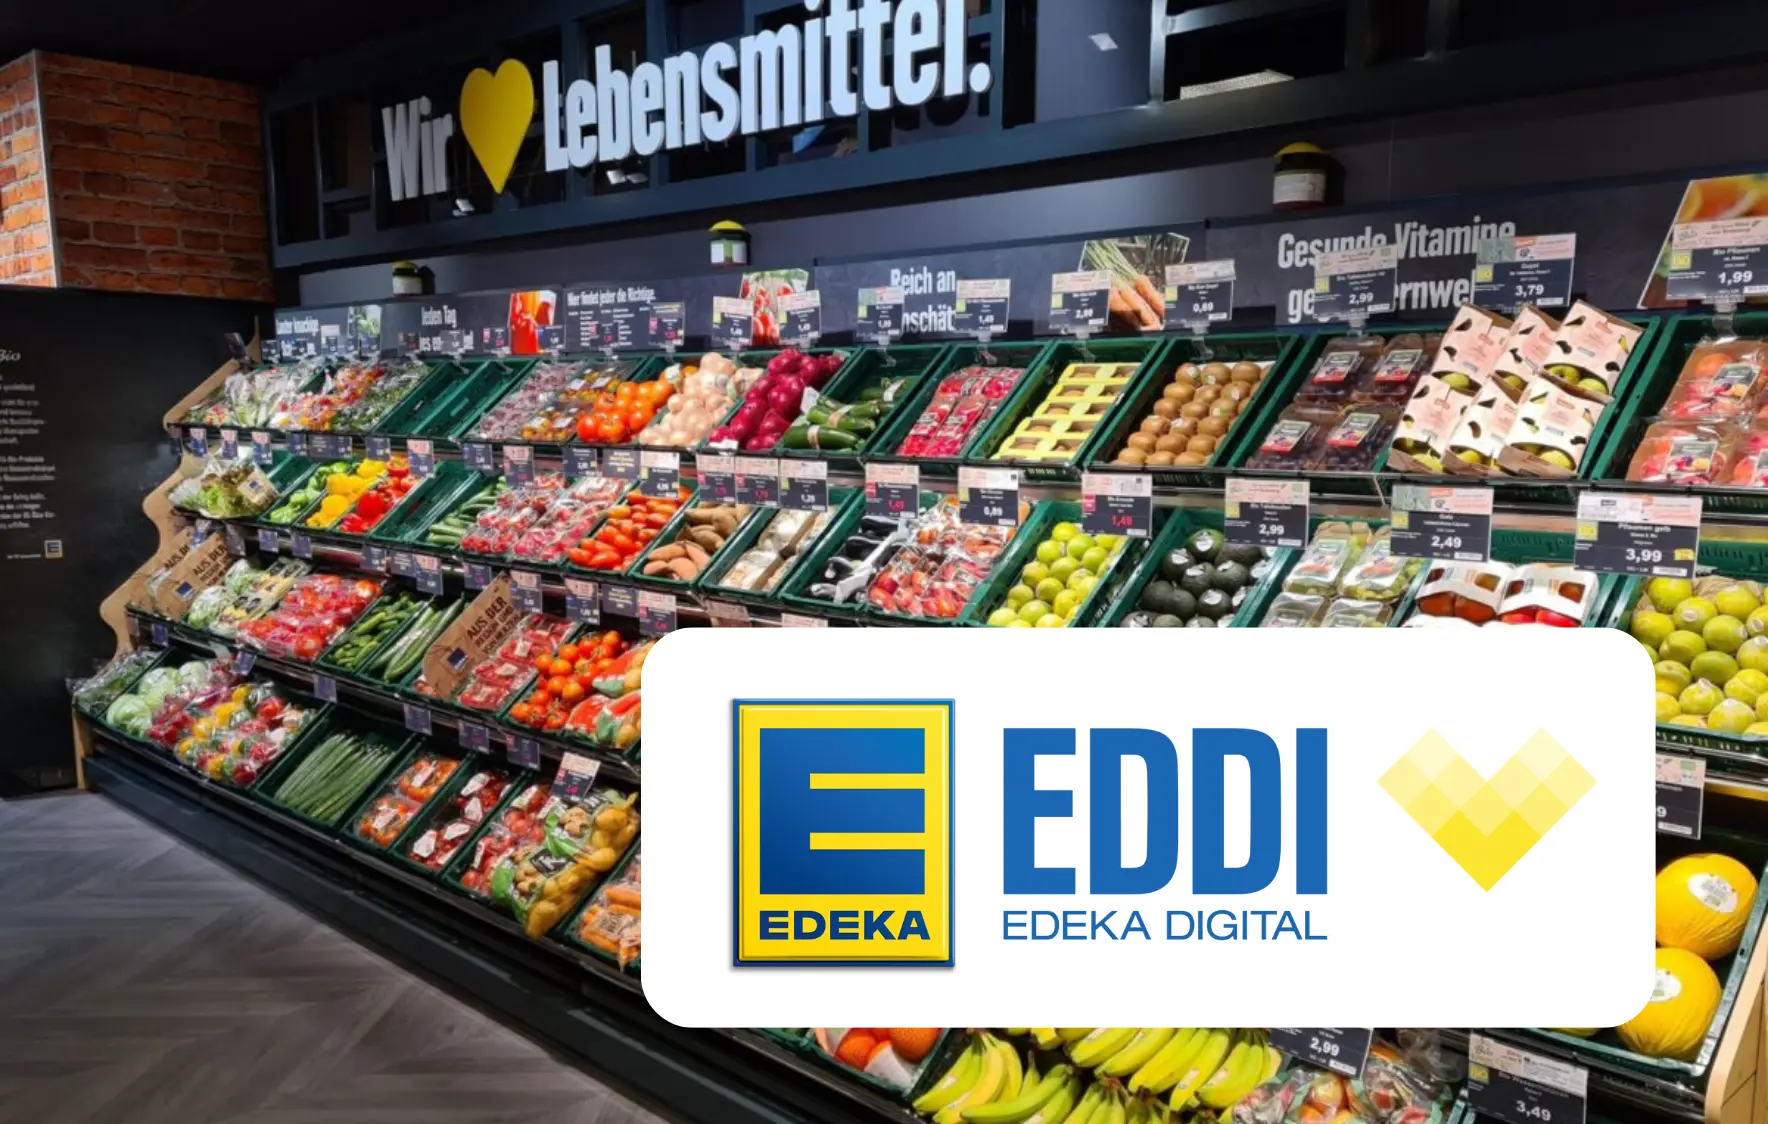 Im Hintergrund ist ein Gemüseregal im Supermarkt zu sehen mit dem Logo von Edeka plus gelbes Edeka-Herz.